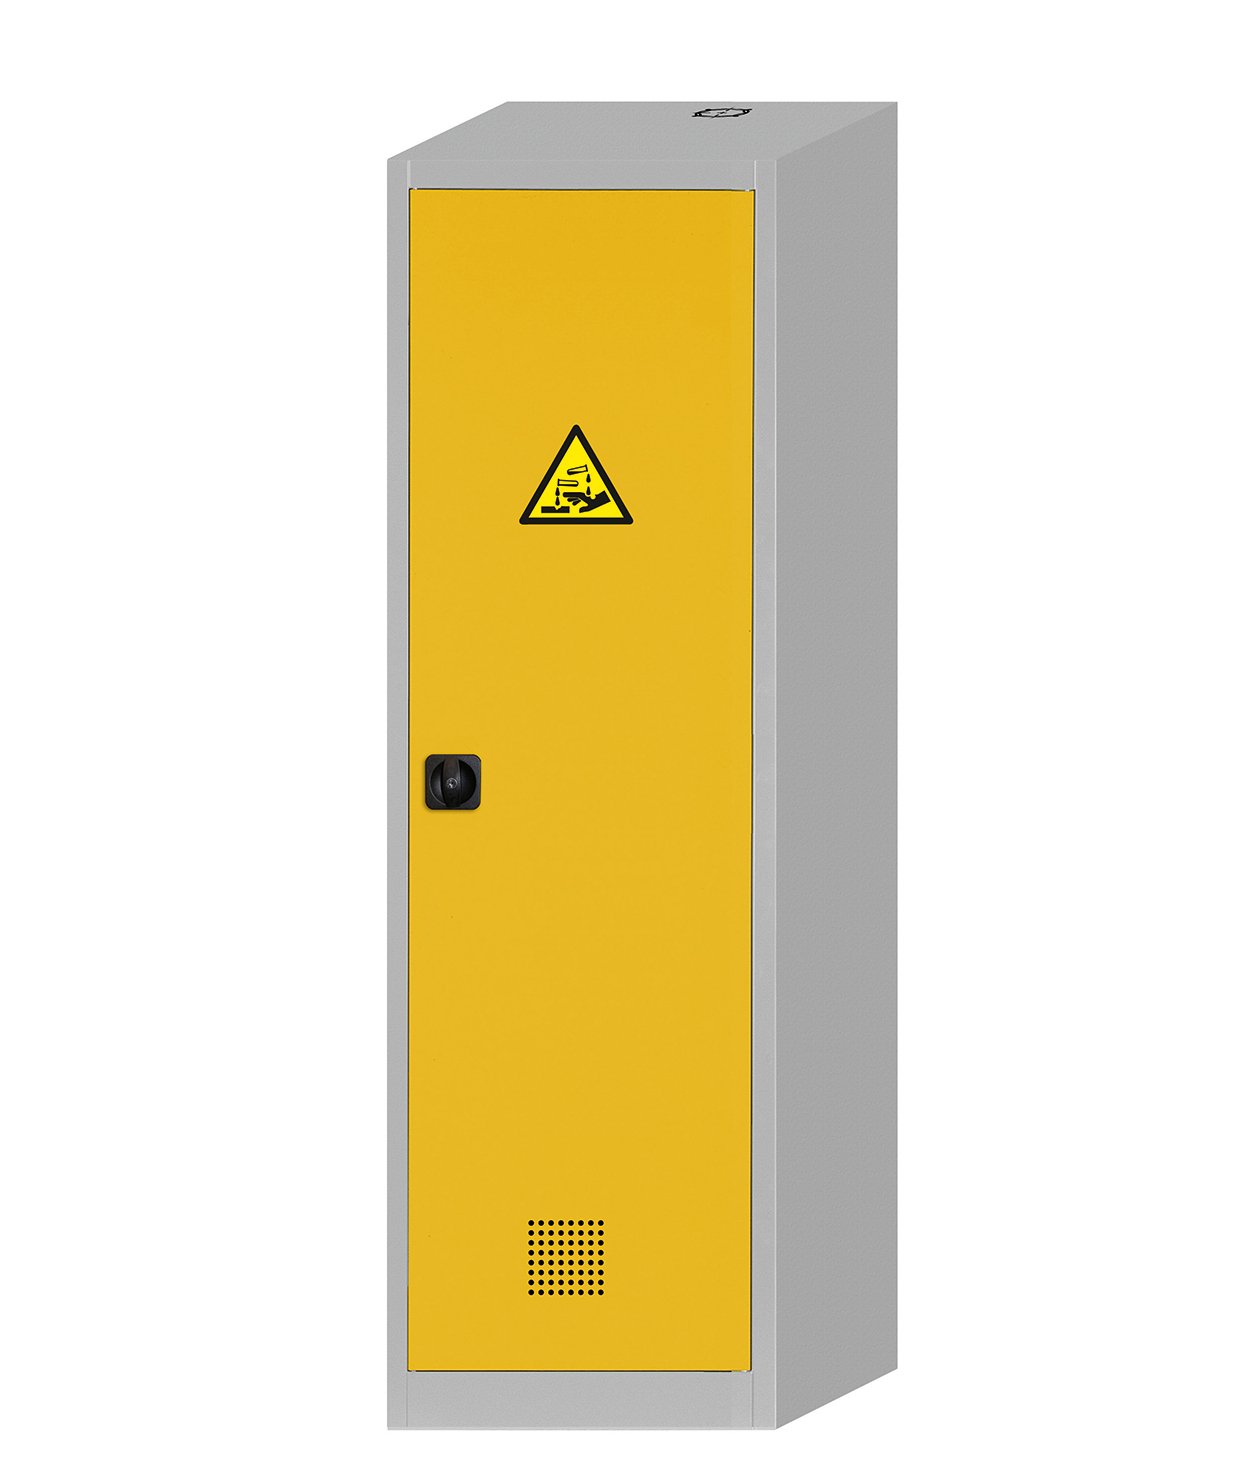 Шкаф для хранения не горючих и токсичных химических веществ ASECOSBRA 60.50.200 CF